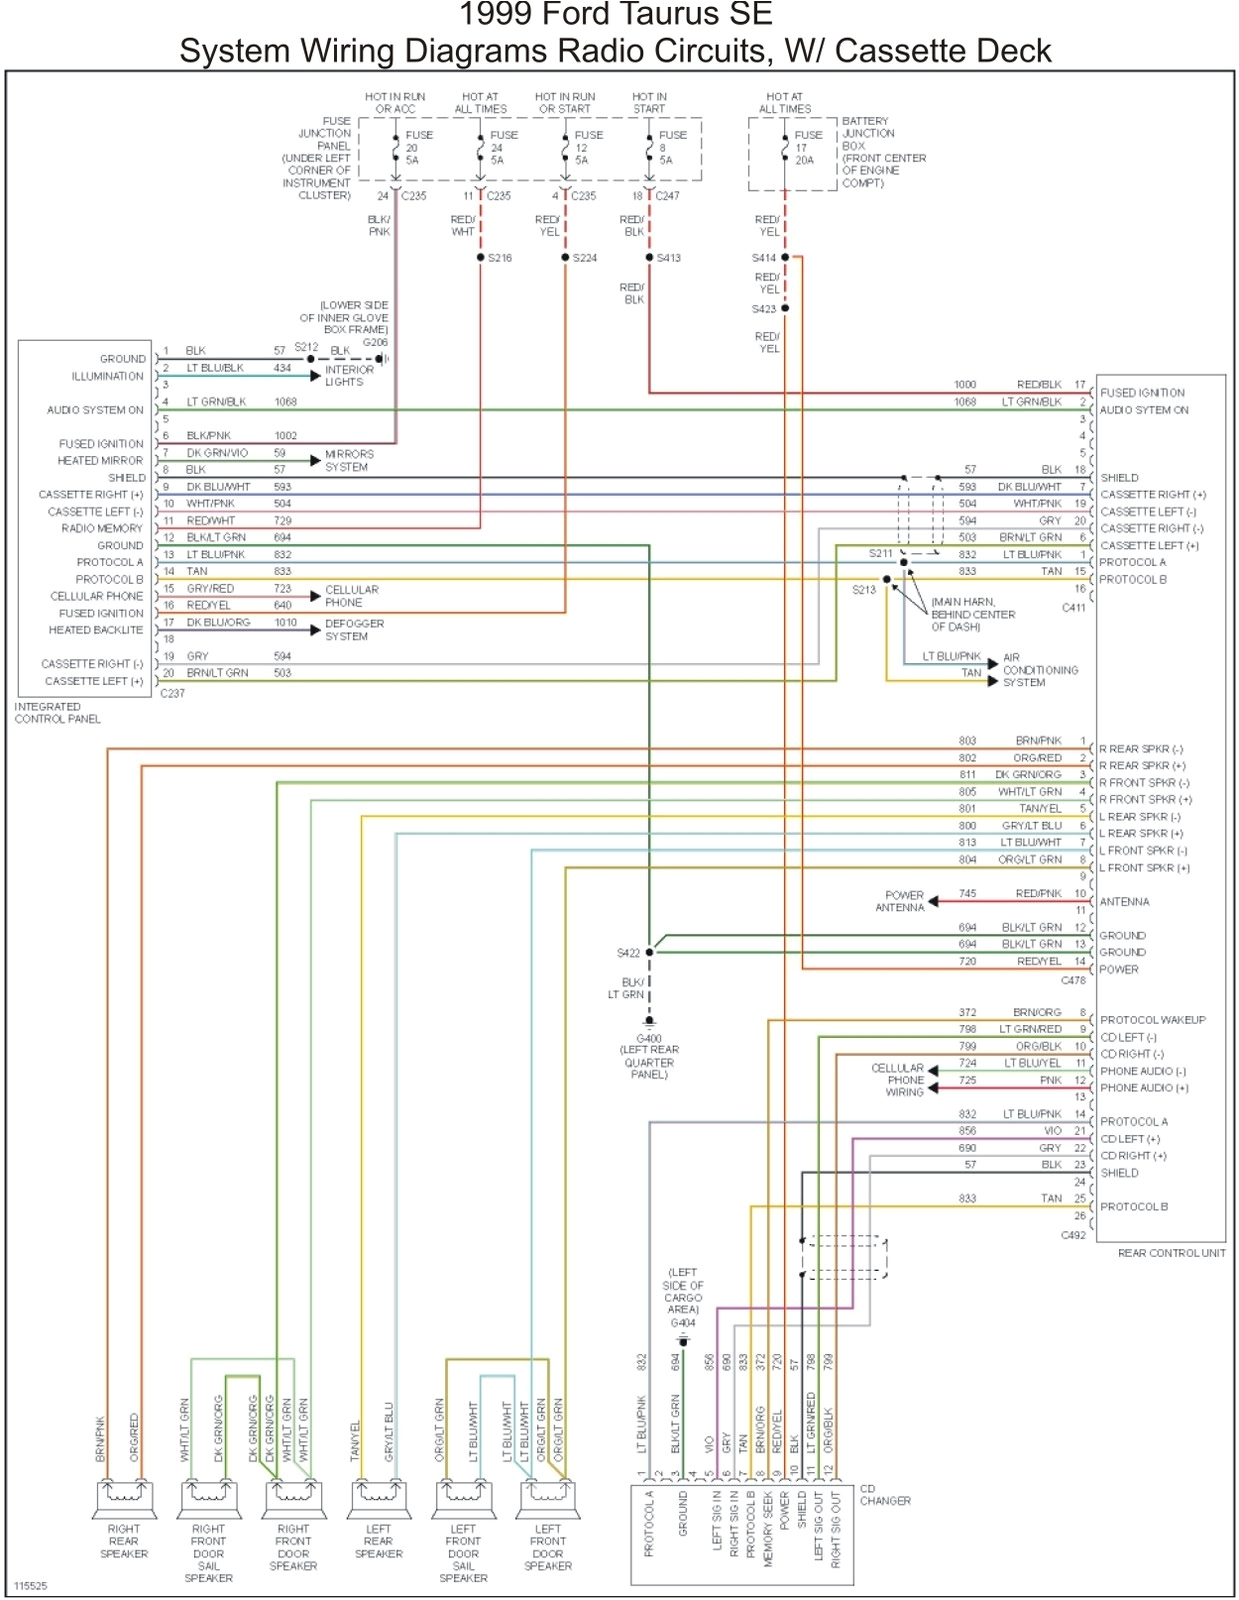 amp wire diagram 99 taurus wiring diagram name ford taurus wiring schematics free